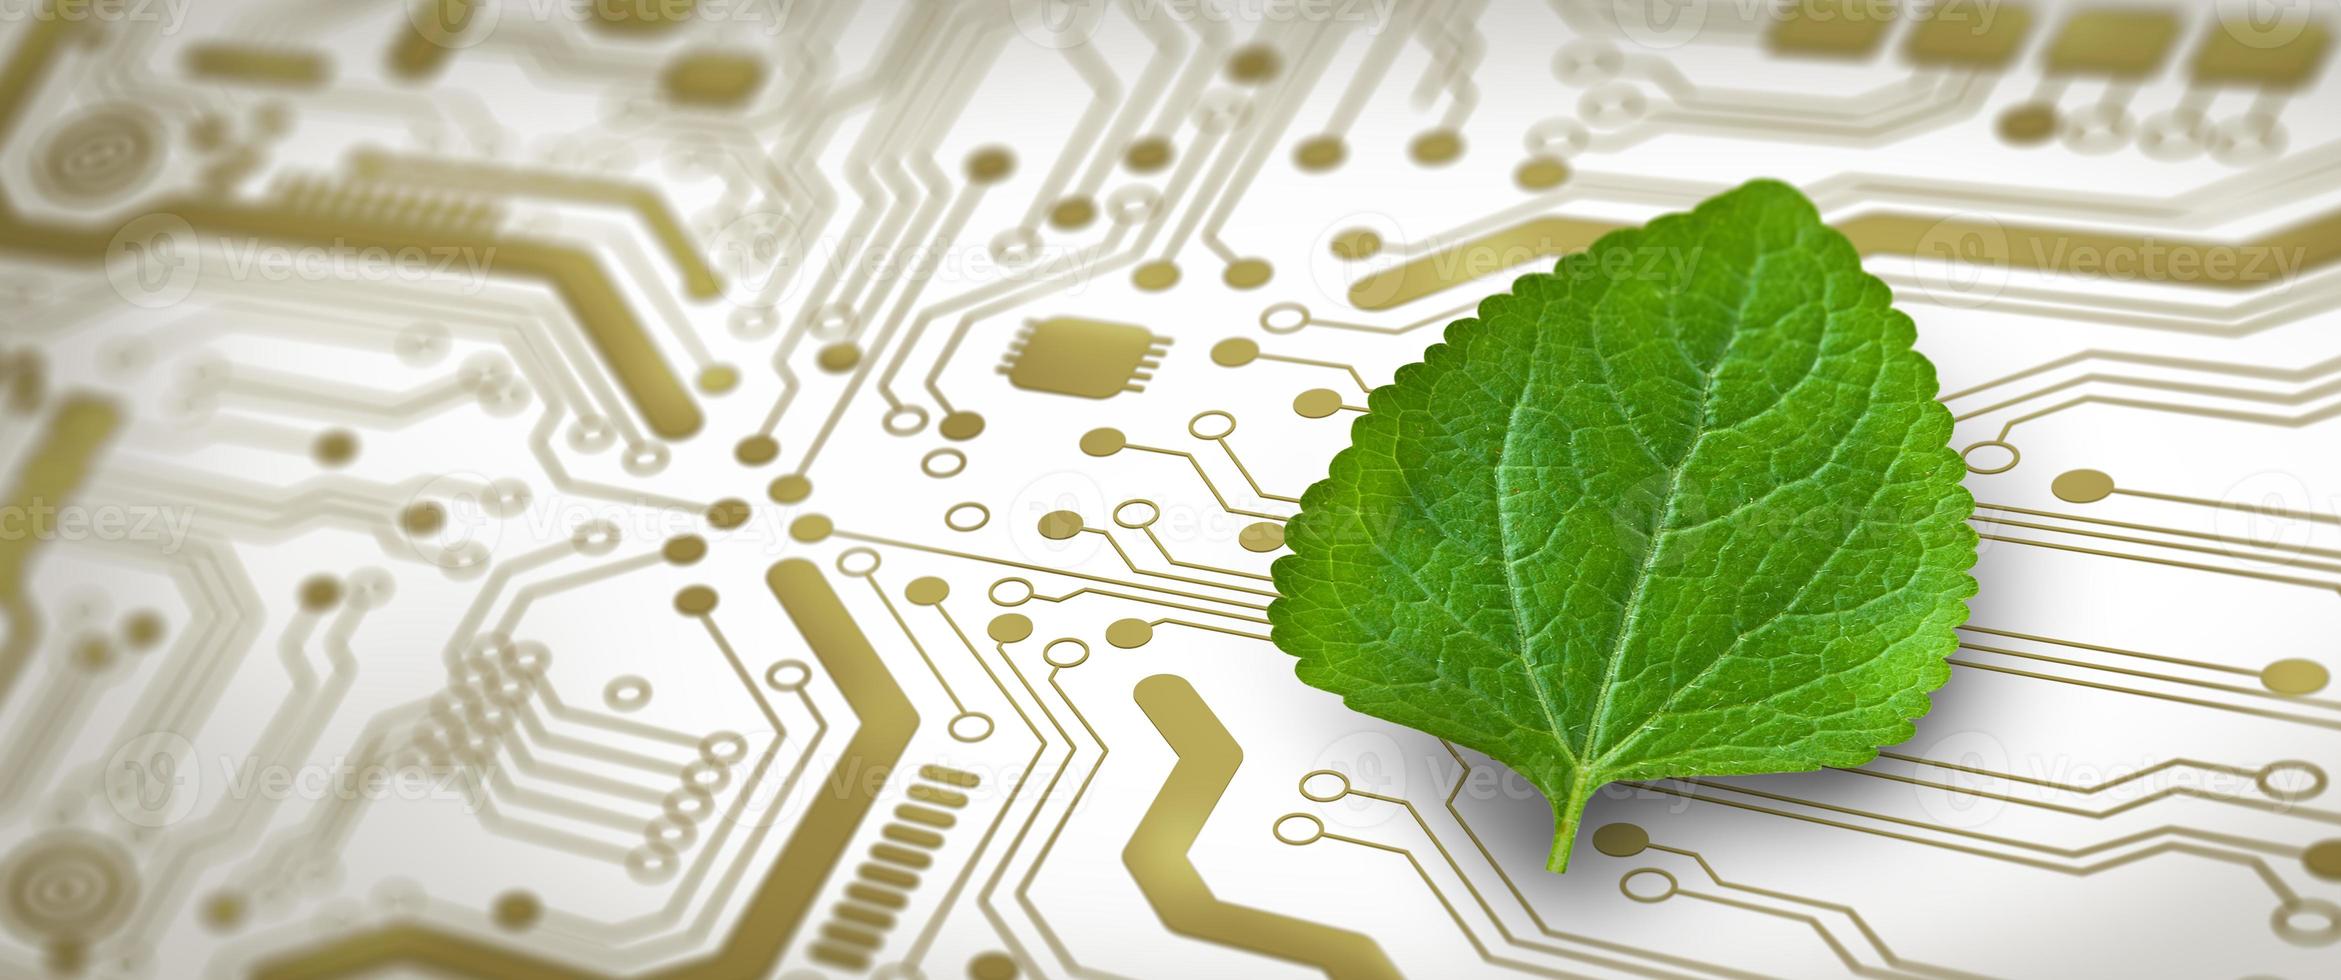 Green Computing, Green Technology, Green It, CSR und IT-Ethik-Konzept. foto